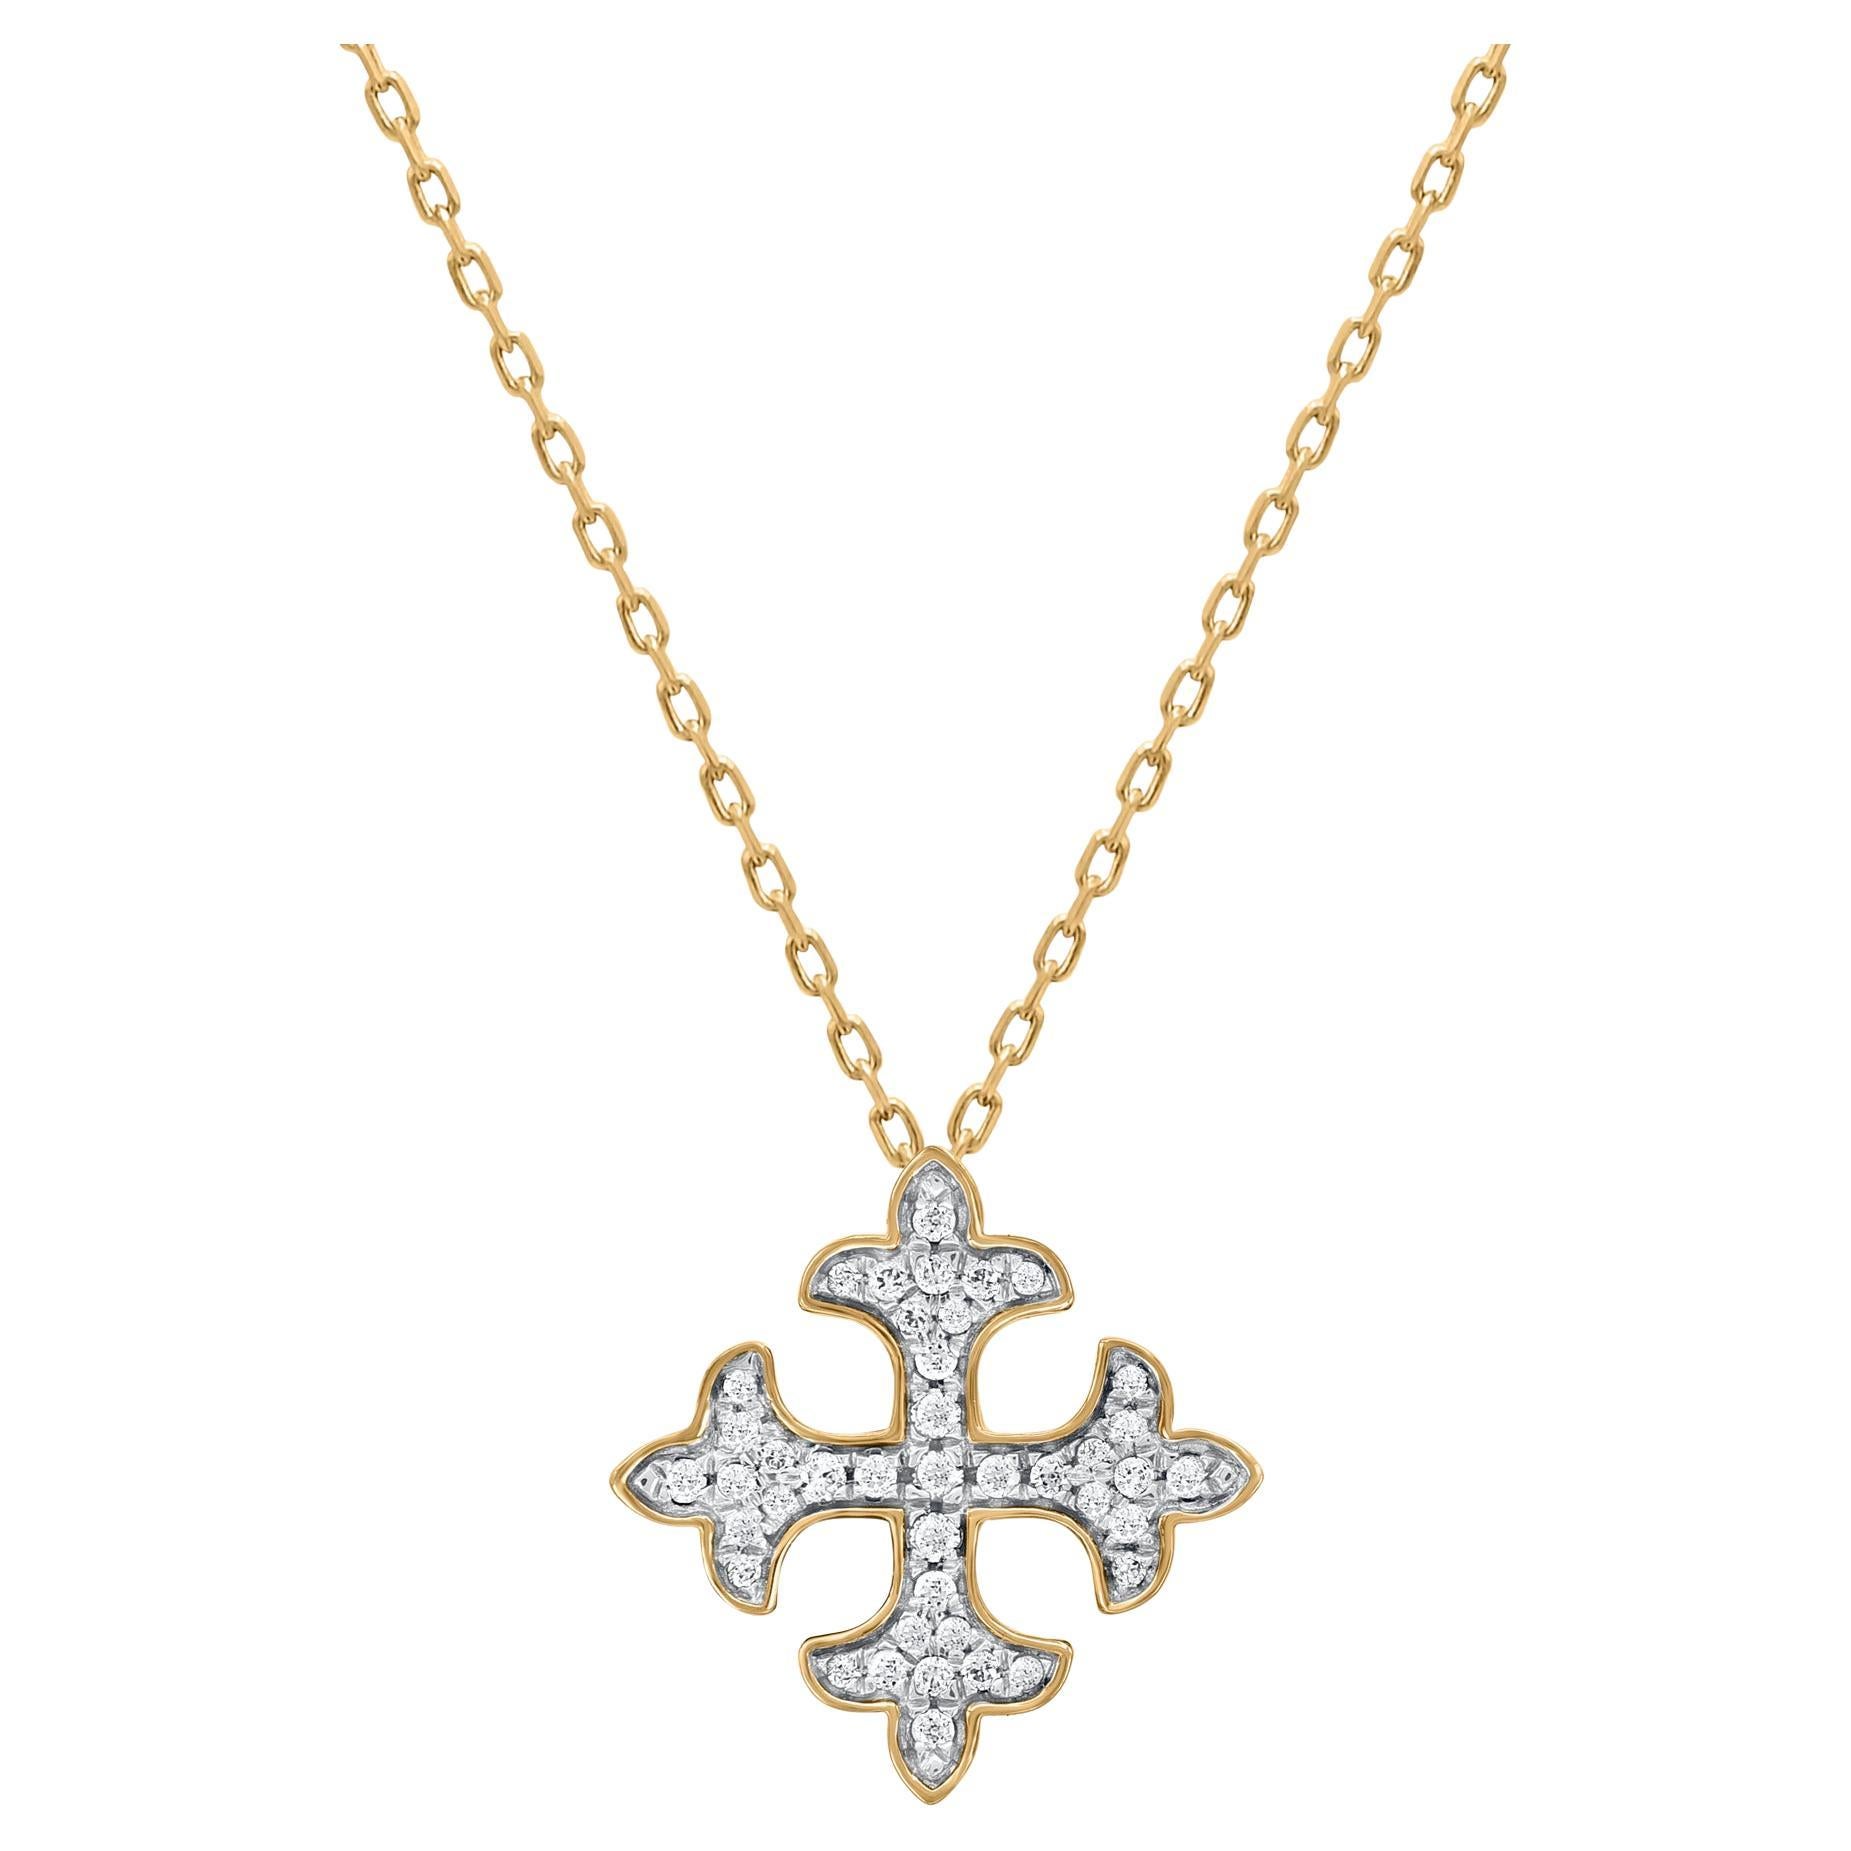 TJD 0.12 Carat Natural Diamond Square Fleur-de-lis Pendant Necklace in 18KT Gold For Sale